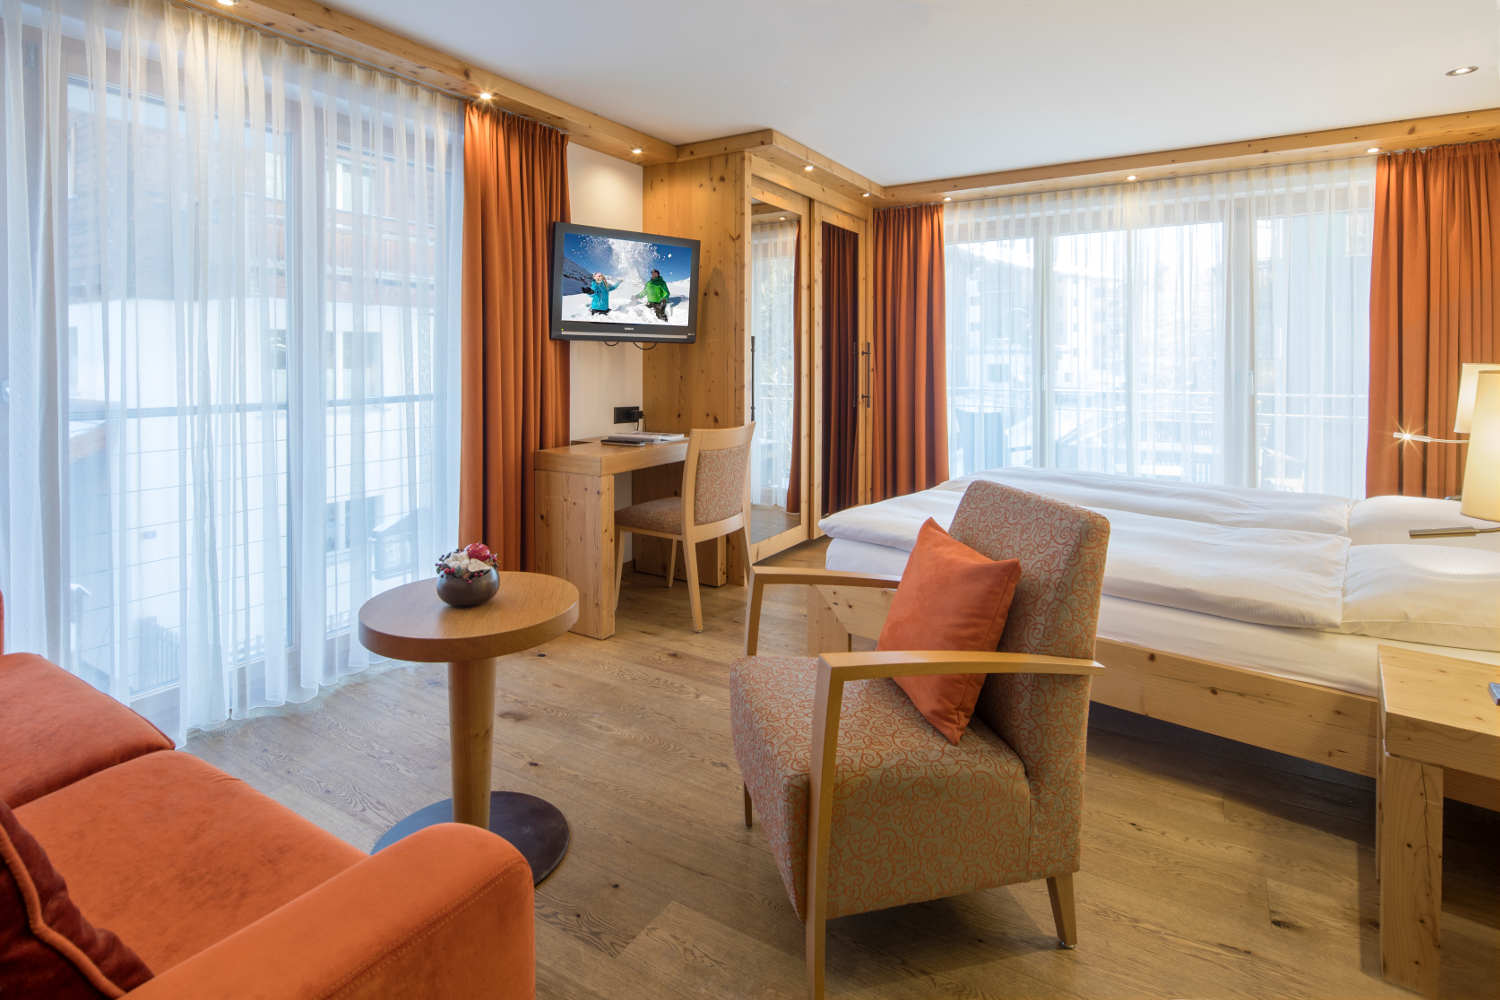 Dreibettzimmer im Hotel in Zermatt